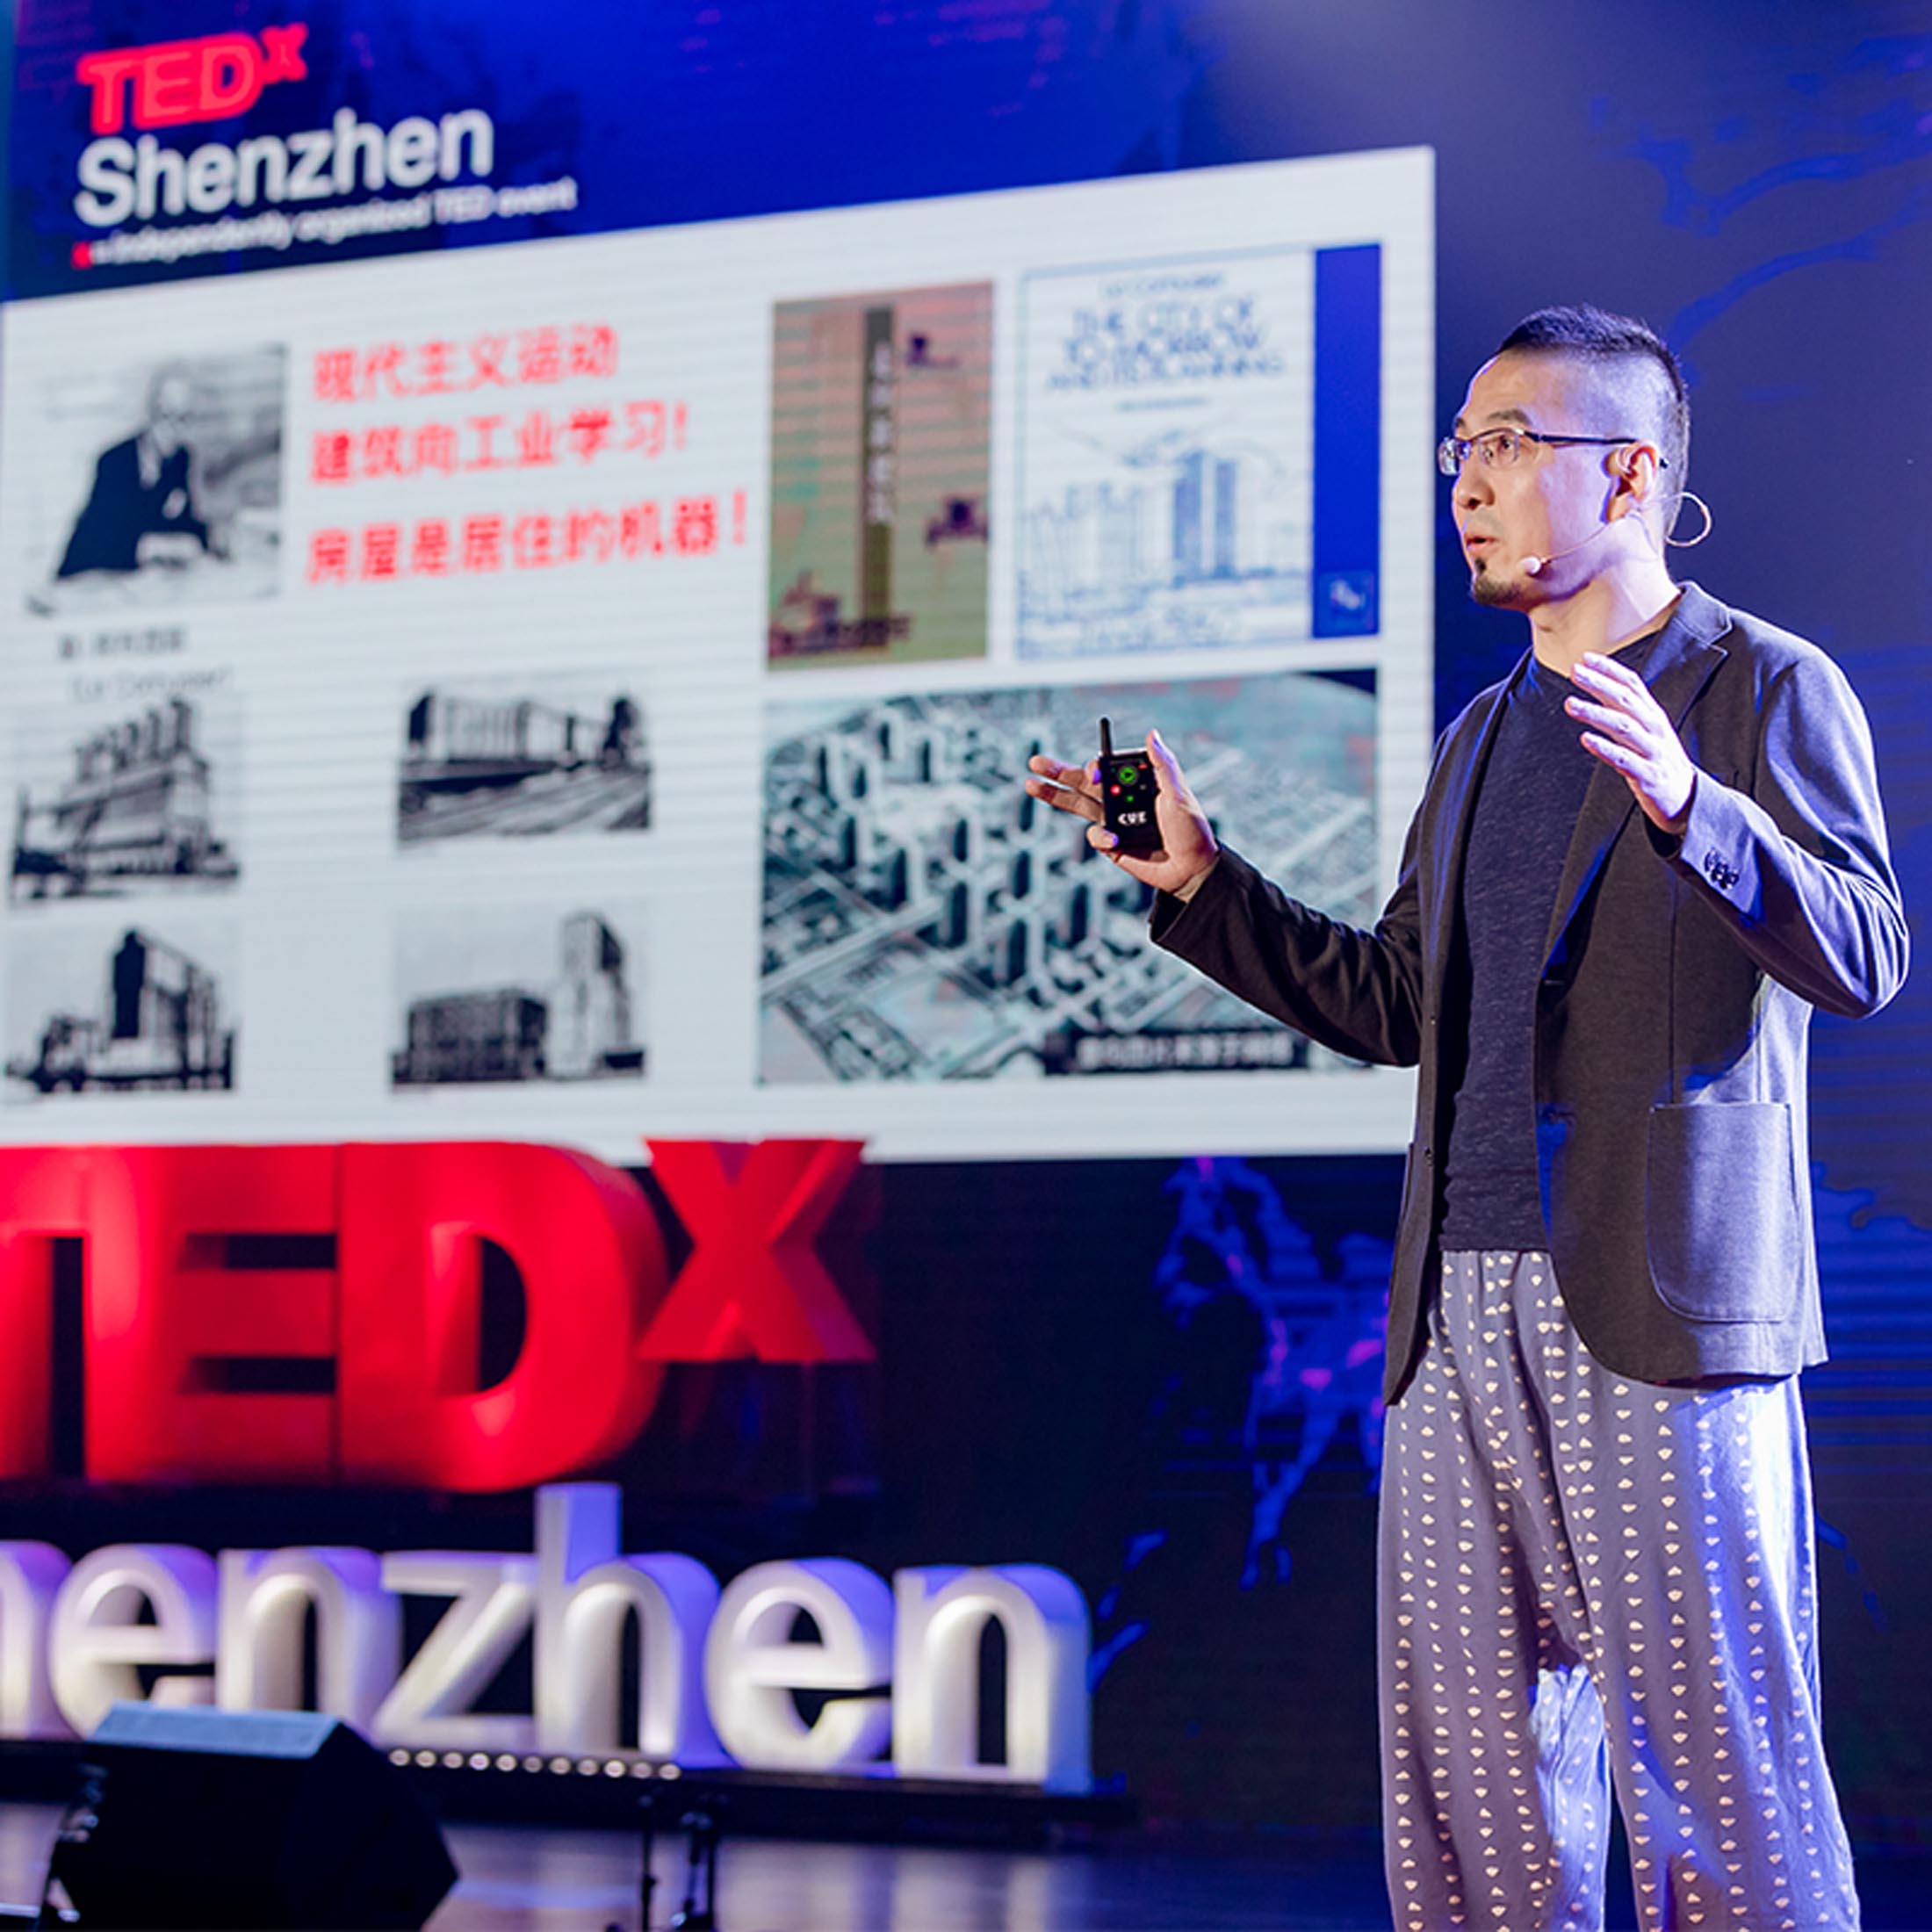 TED SZ-Zhang Zhiyang Speech